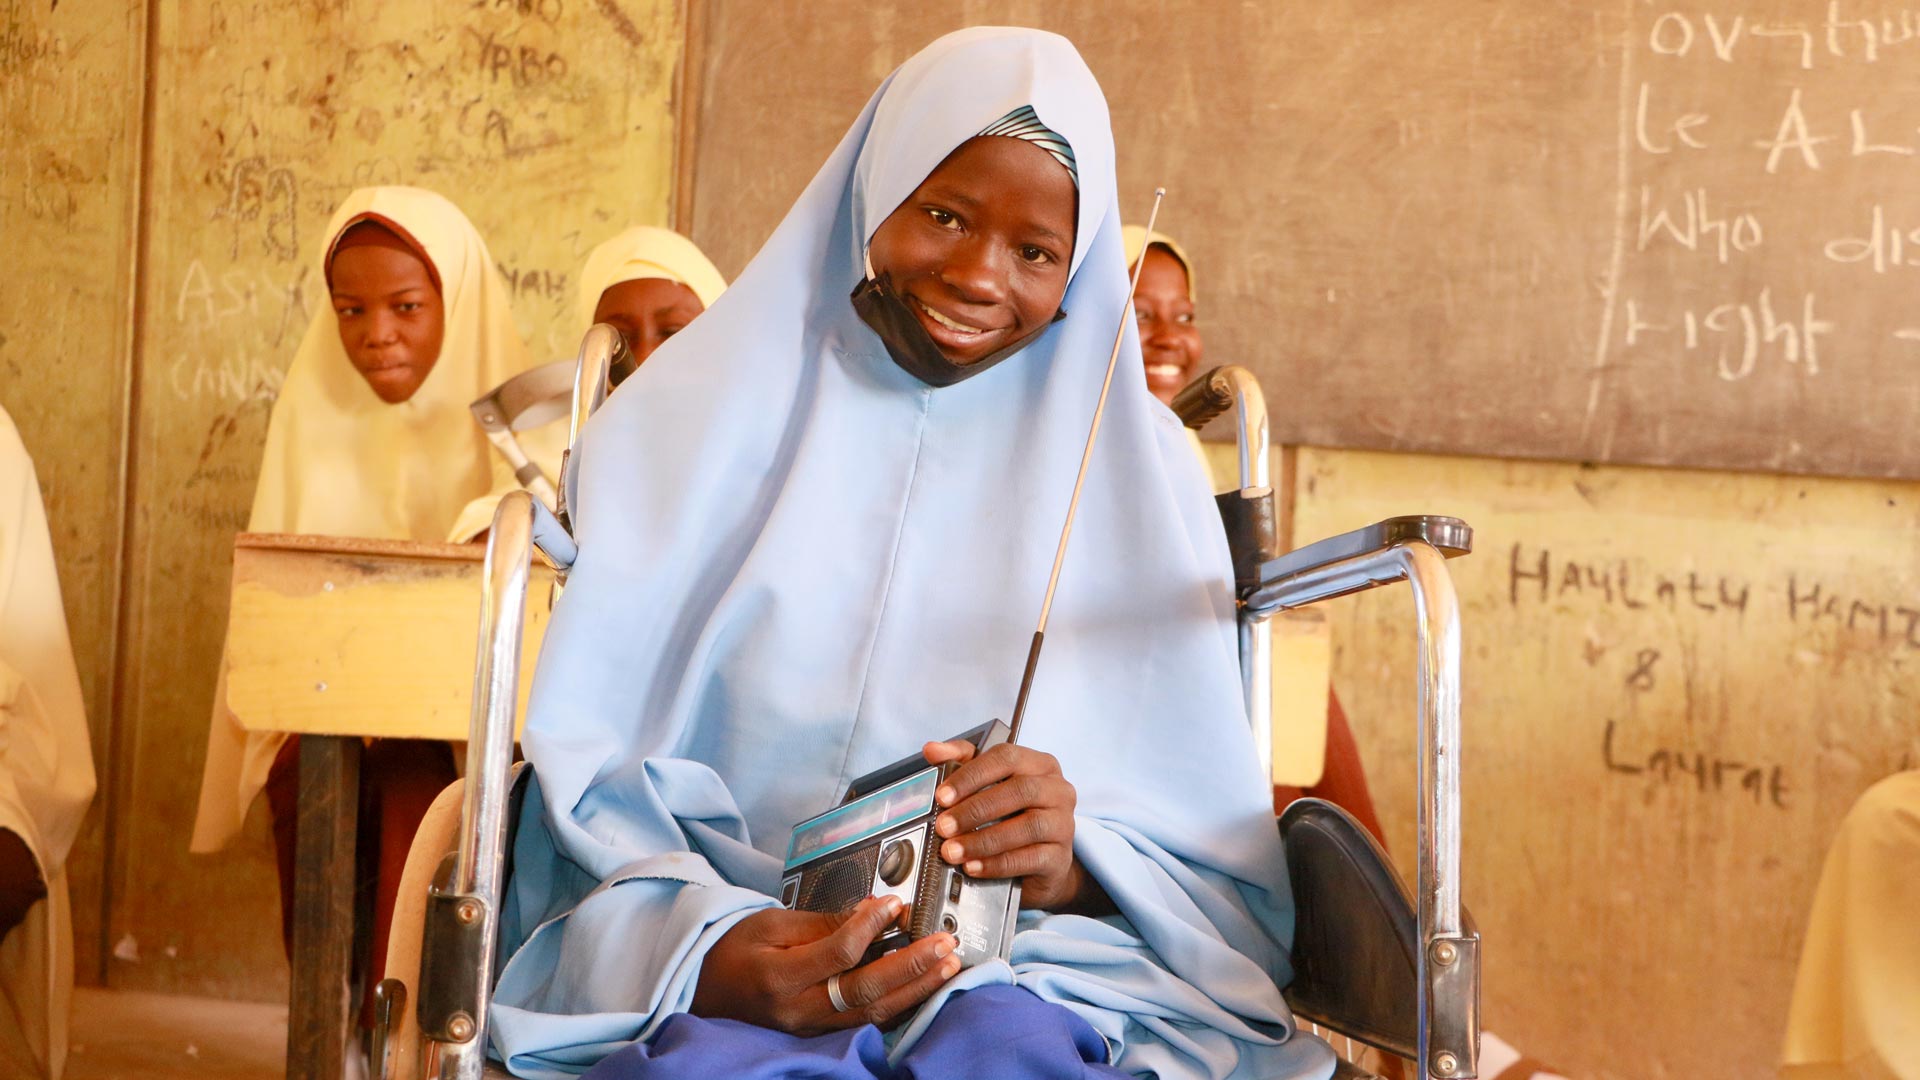 Com o rádio que ganhou da ActionAid, Ummu pôde estudar durante a pandemia e passou nos exames do ensino médio. Foto: ActionAid